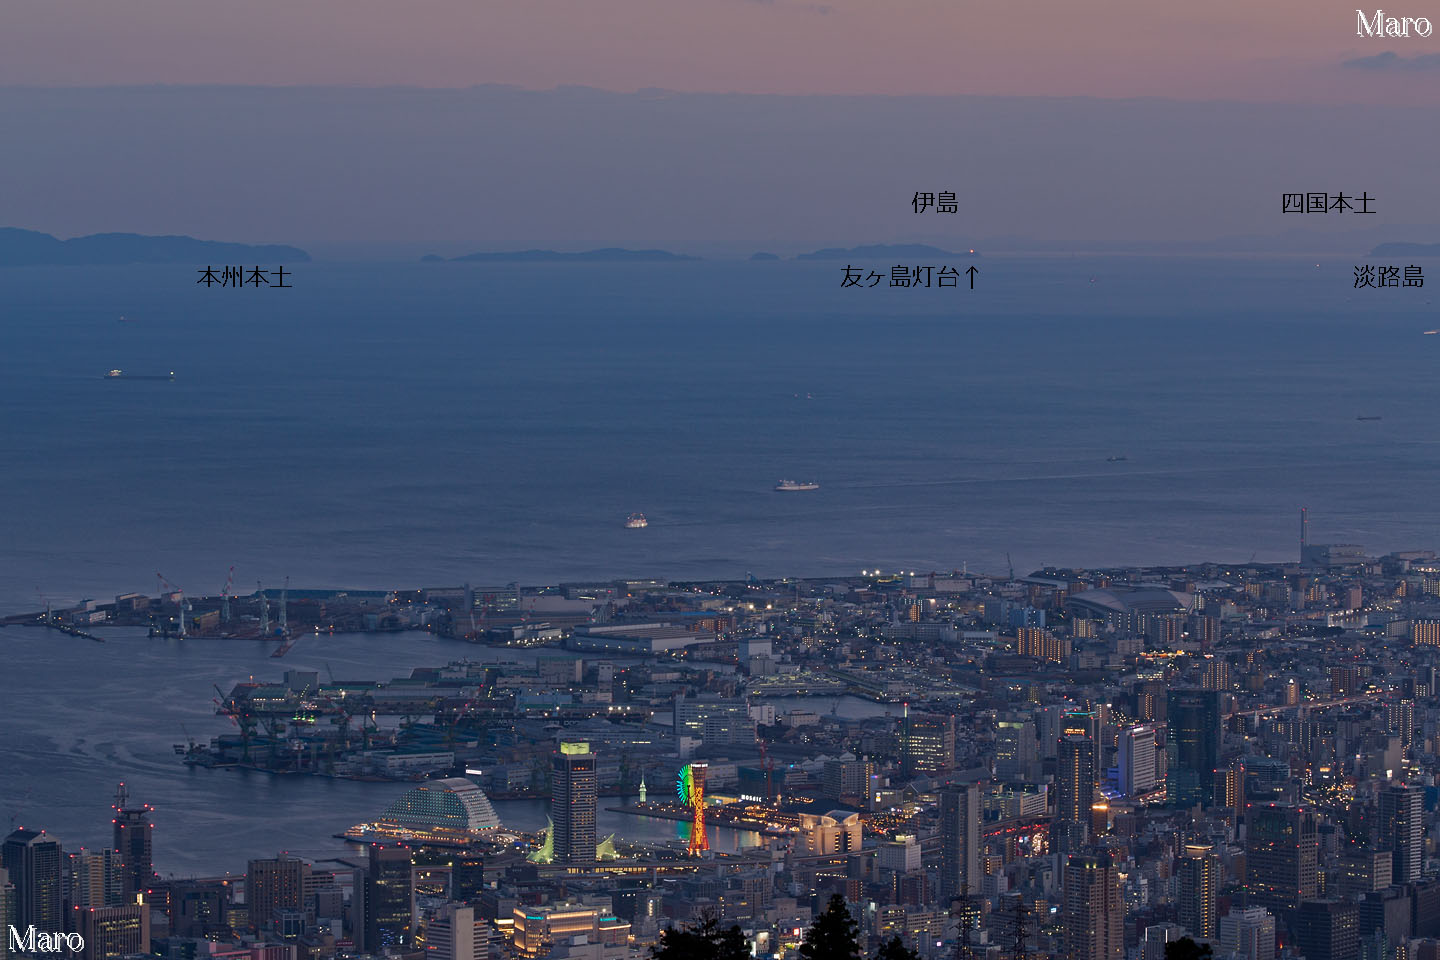 日没後の摩耶山から眼下に神戸港方面の夕景、遠くに友ヶ島、四国東端まで一望する